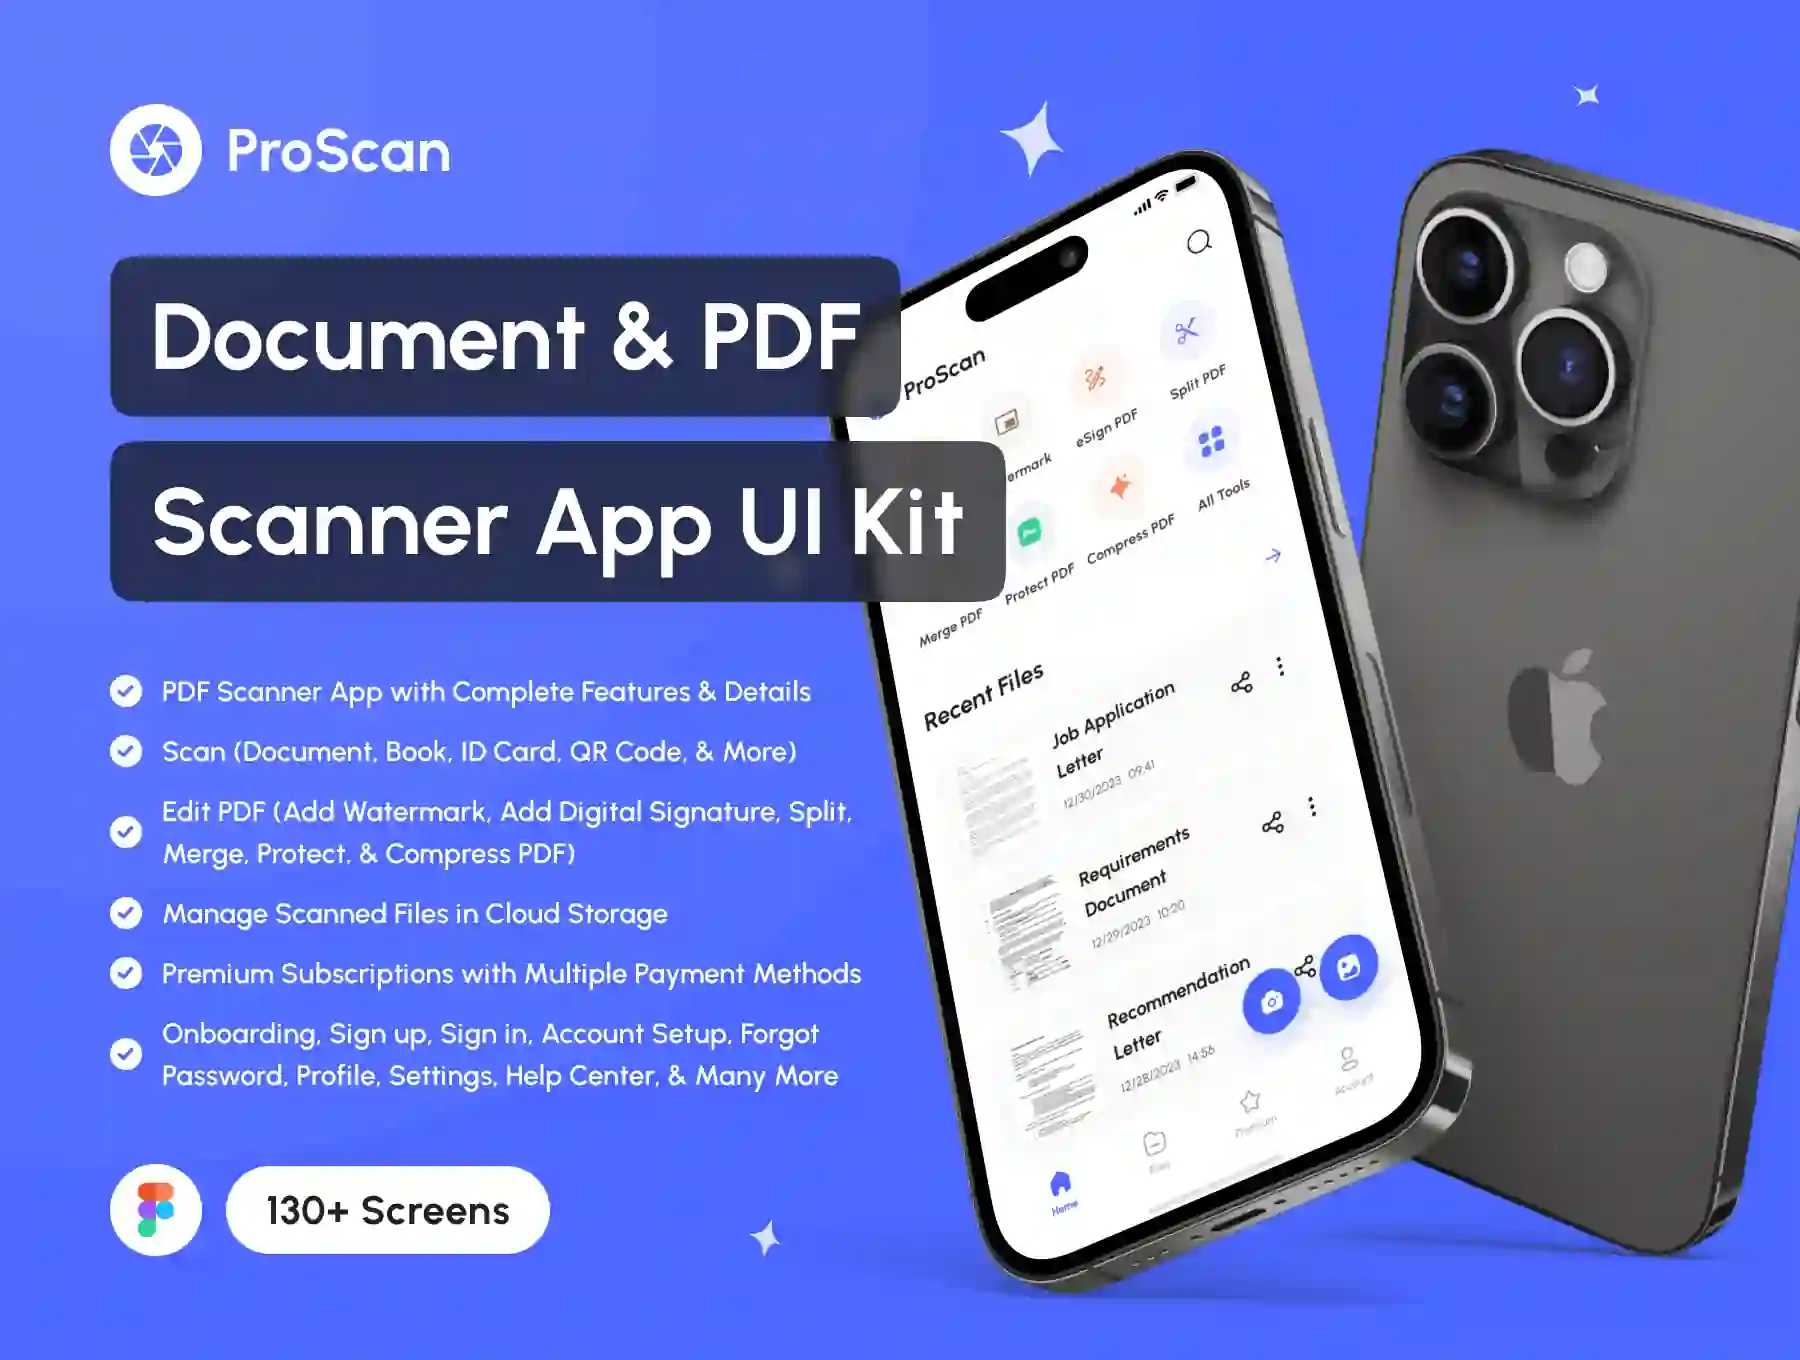 ProScan - Document & PDF Scanner App UI Kit